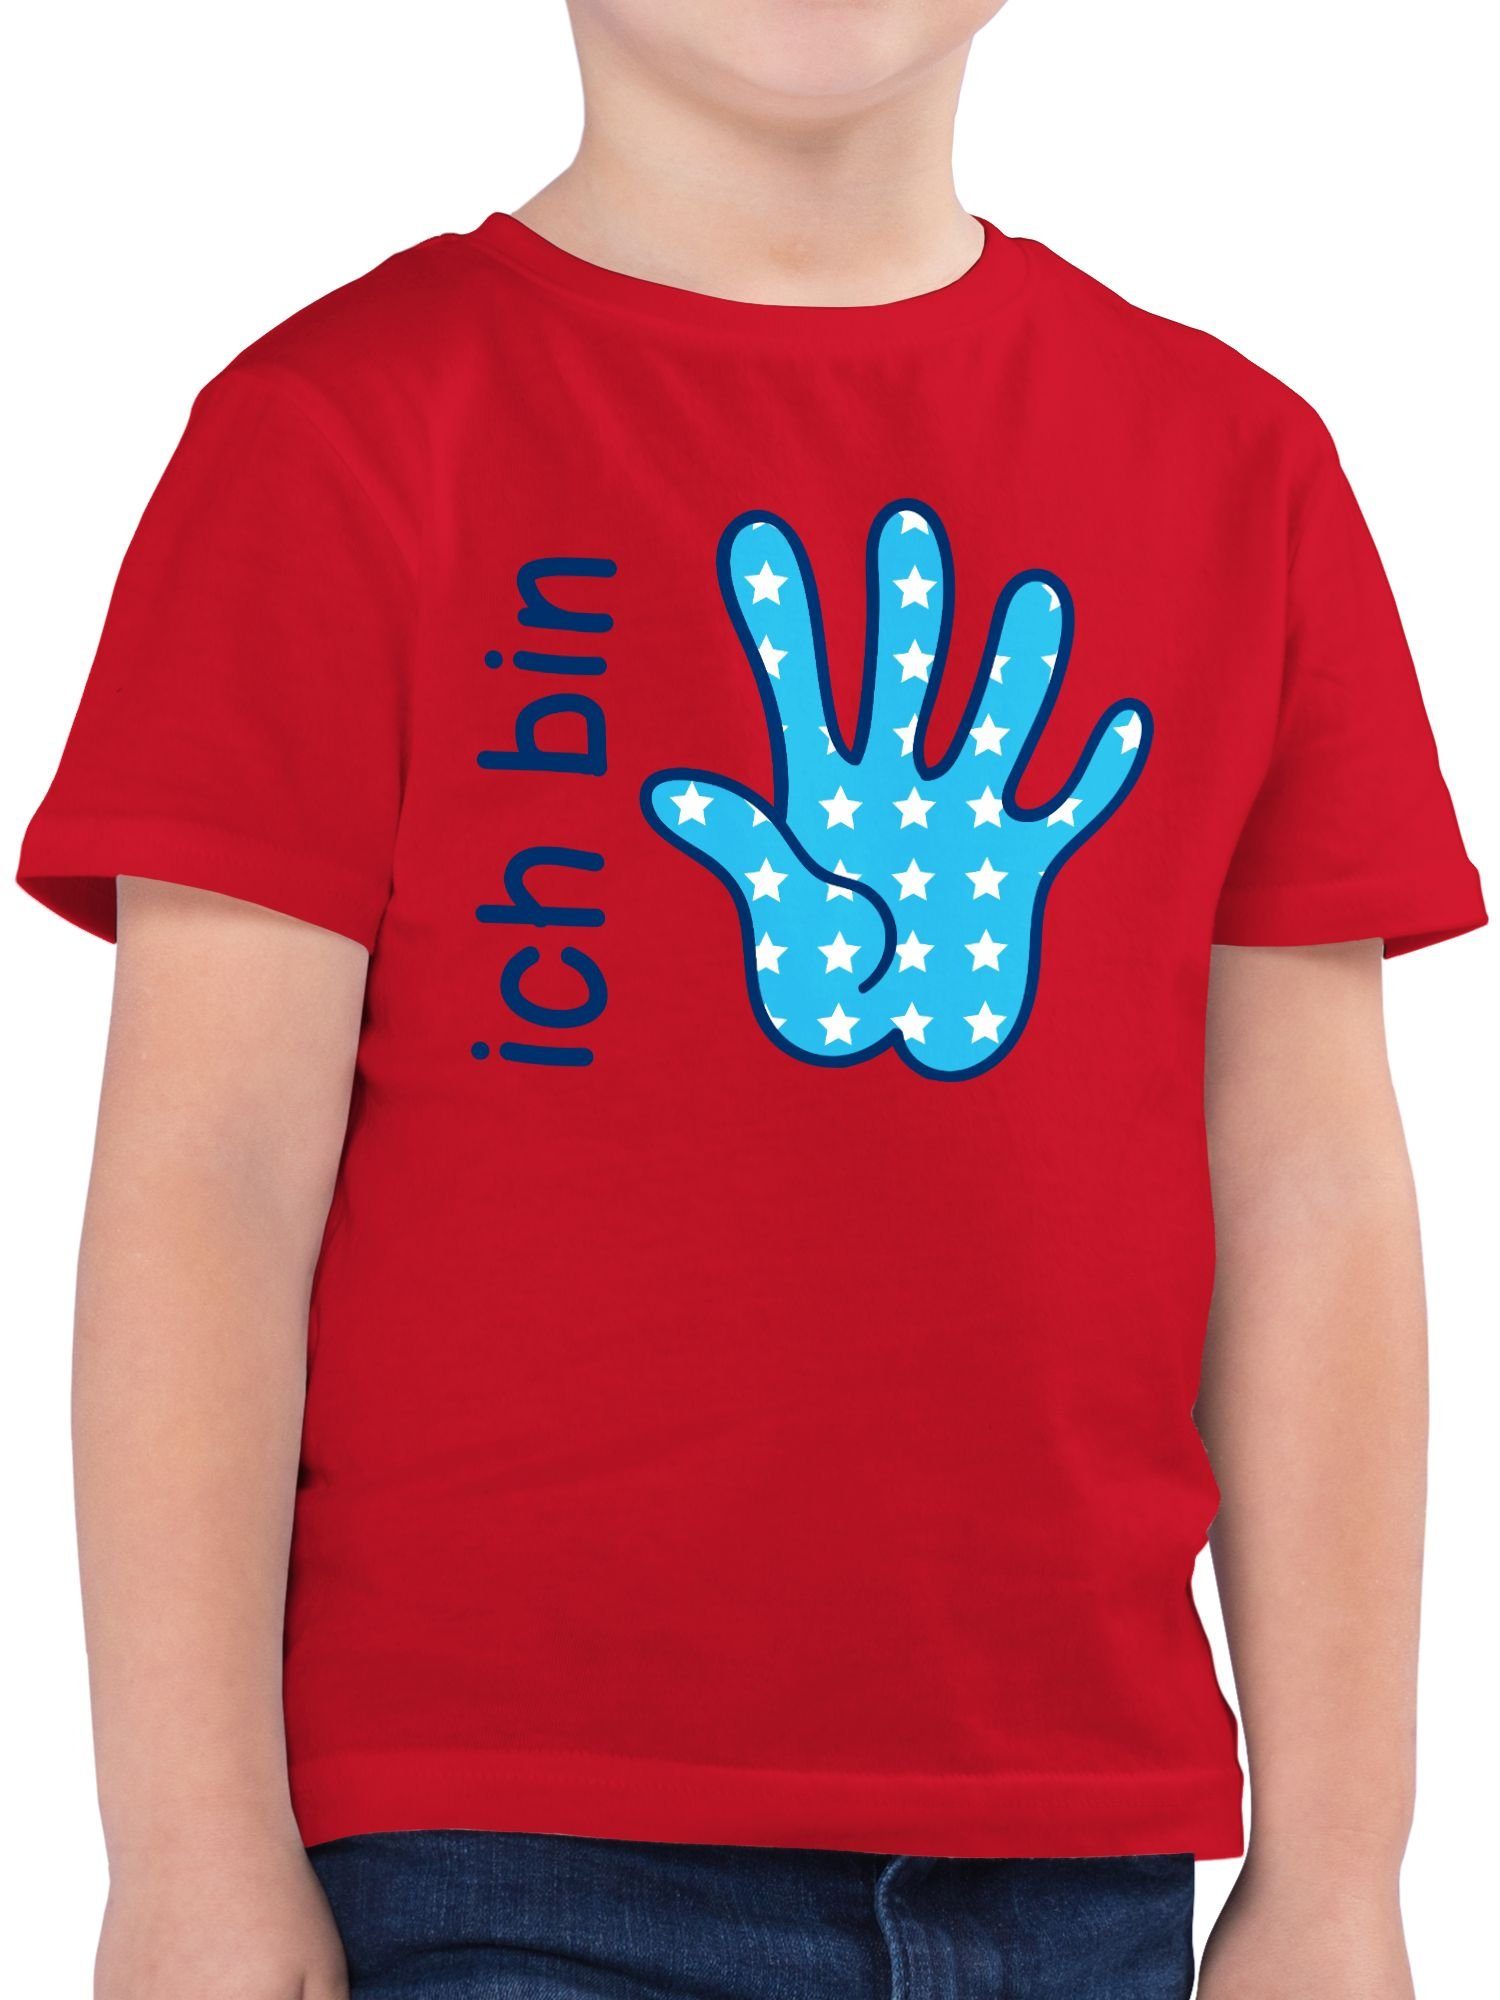 Shirtracer T-Shirt Ich 2 blau Zeichensprache Rot 5. fünf bin Geburtstag